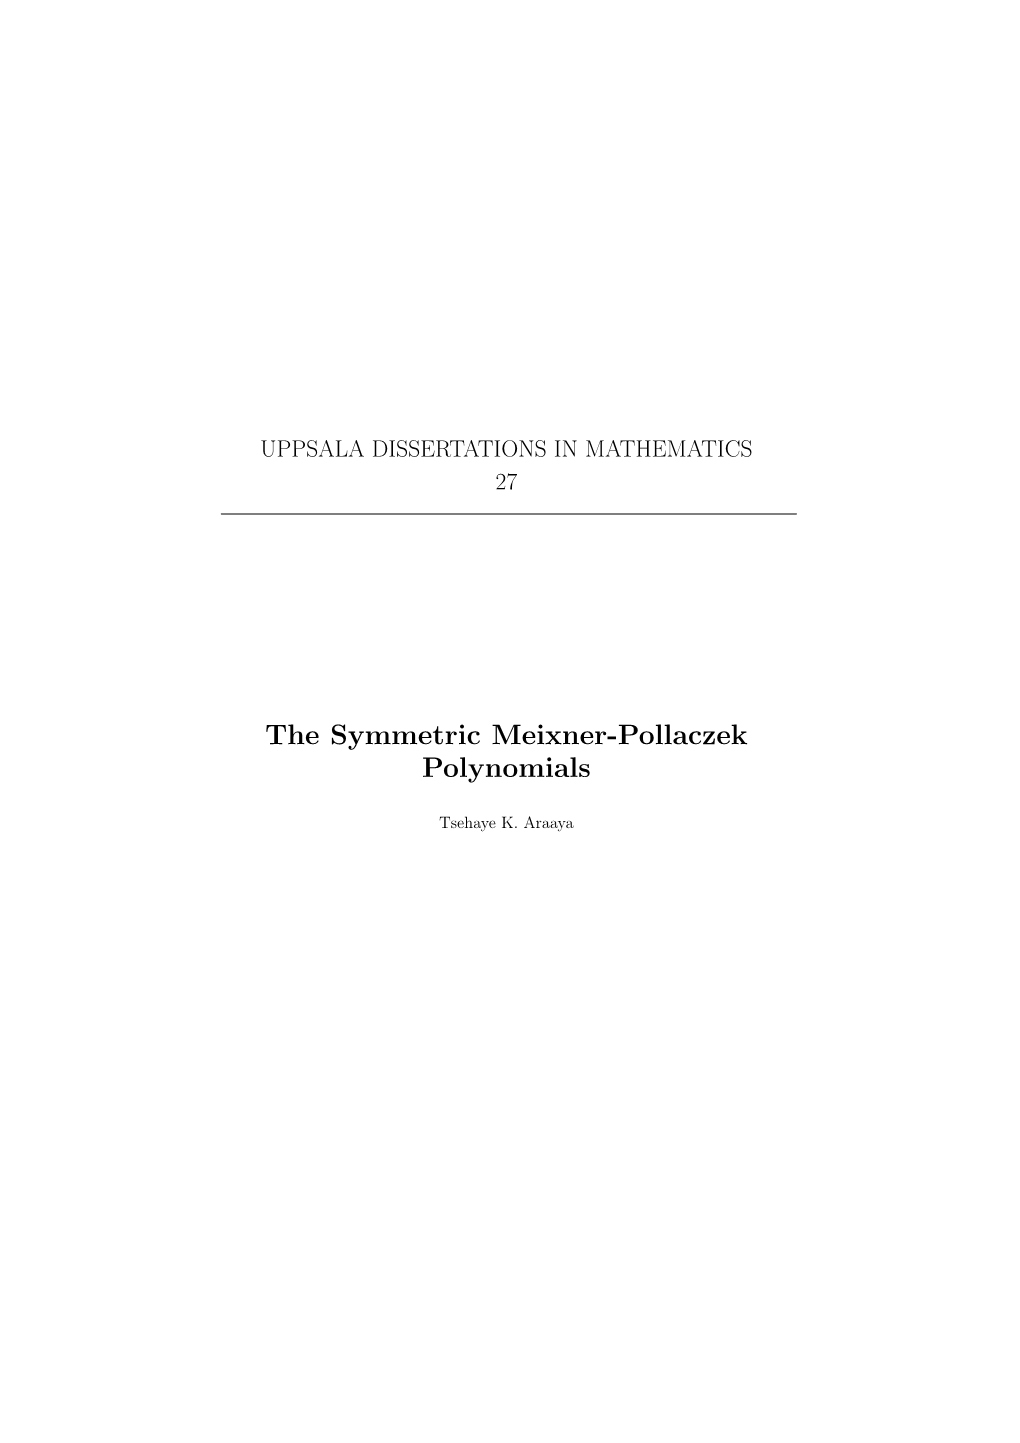 The Symmetric Meixner-Pollaczek Polynomials